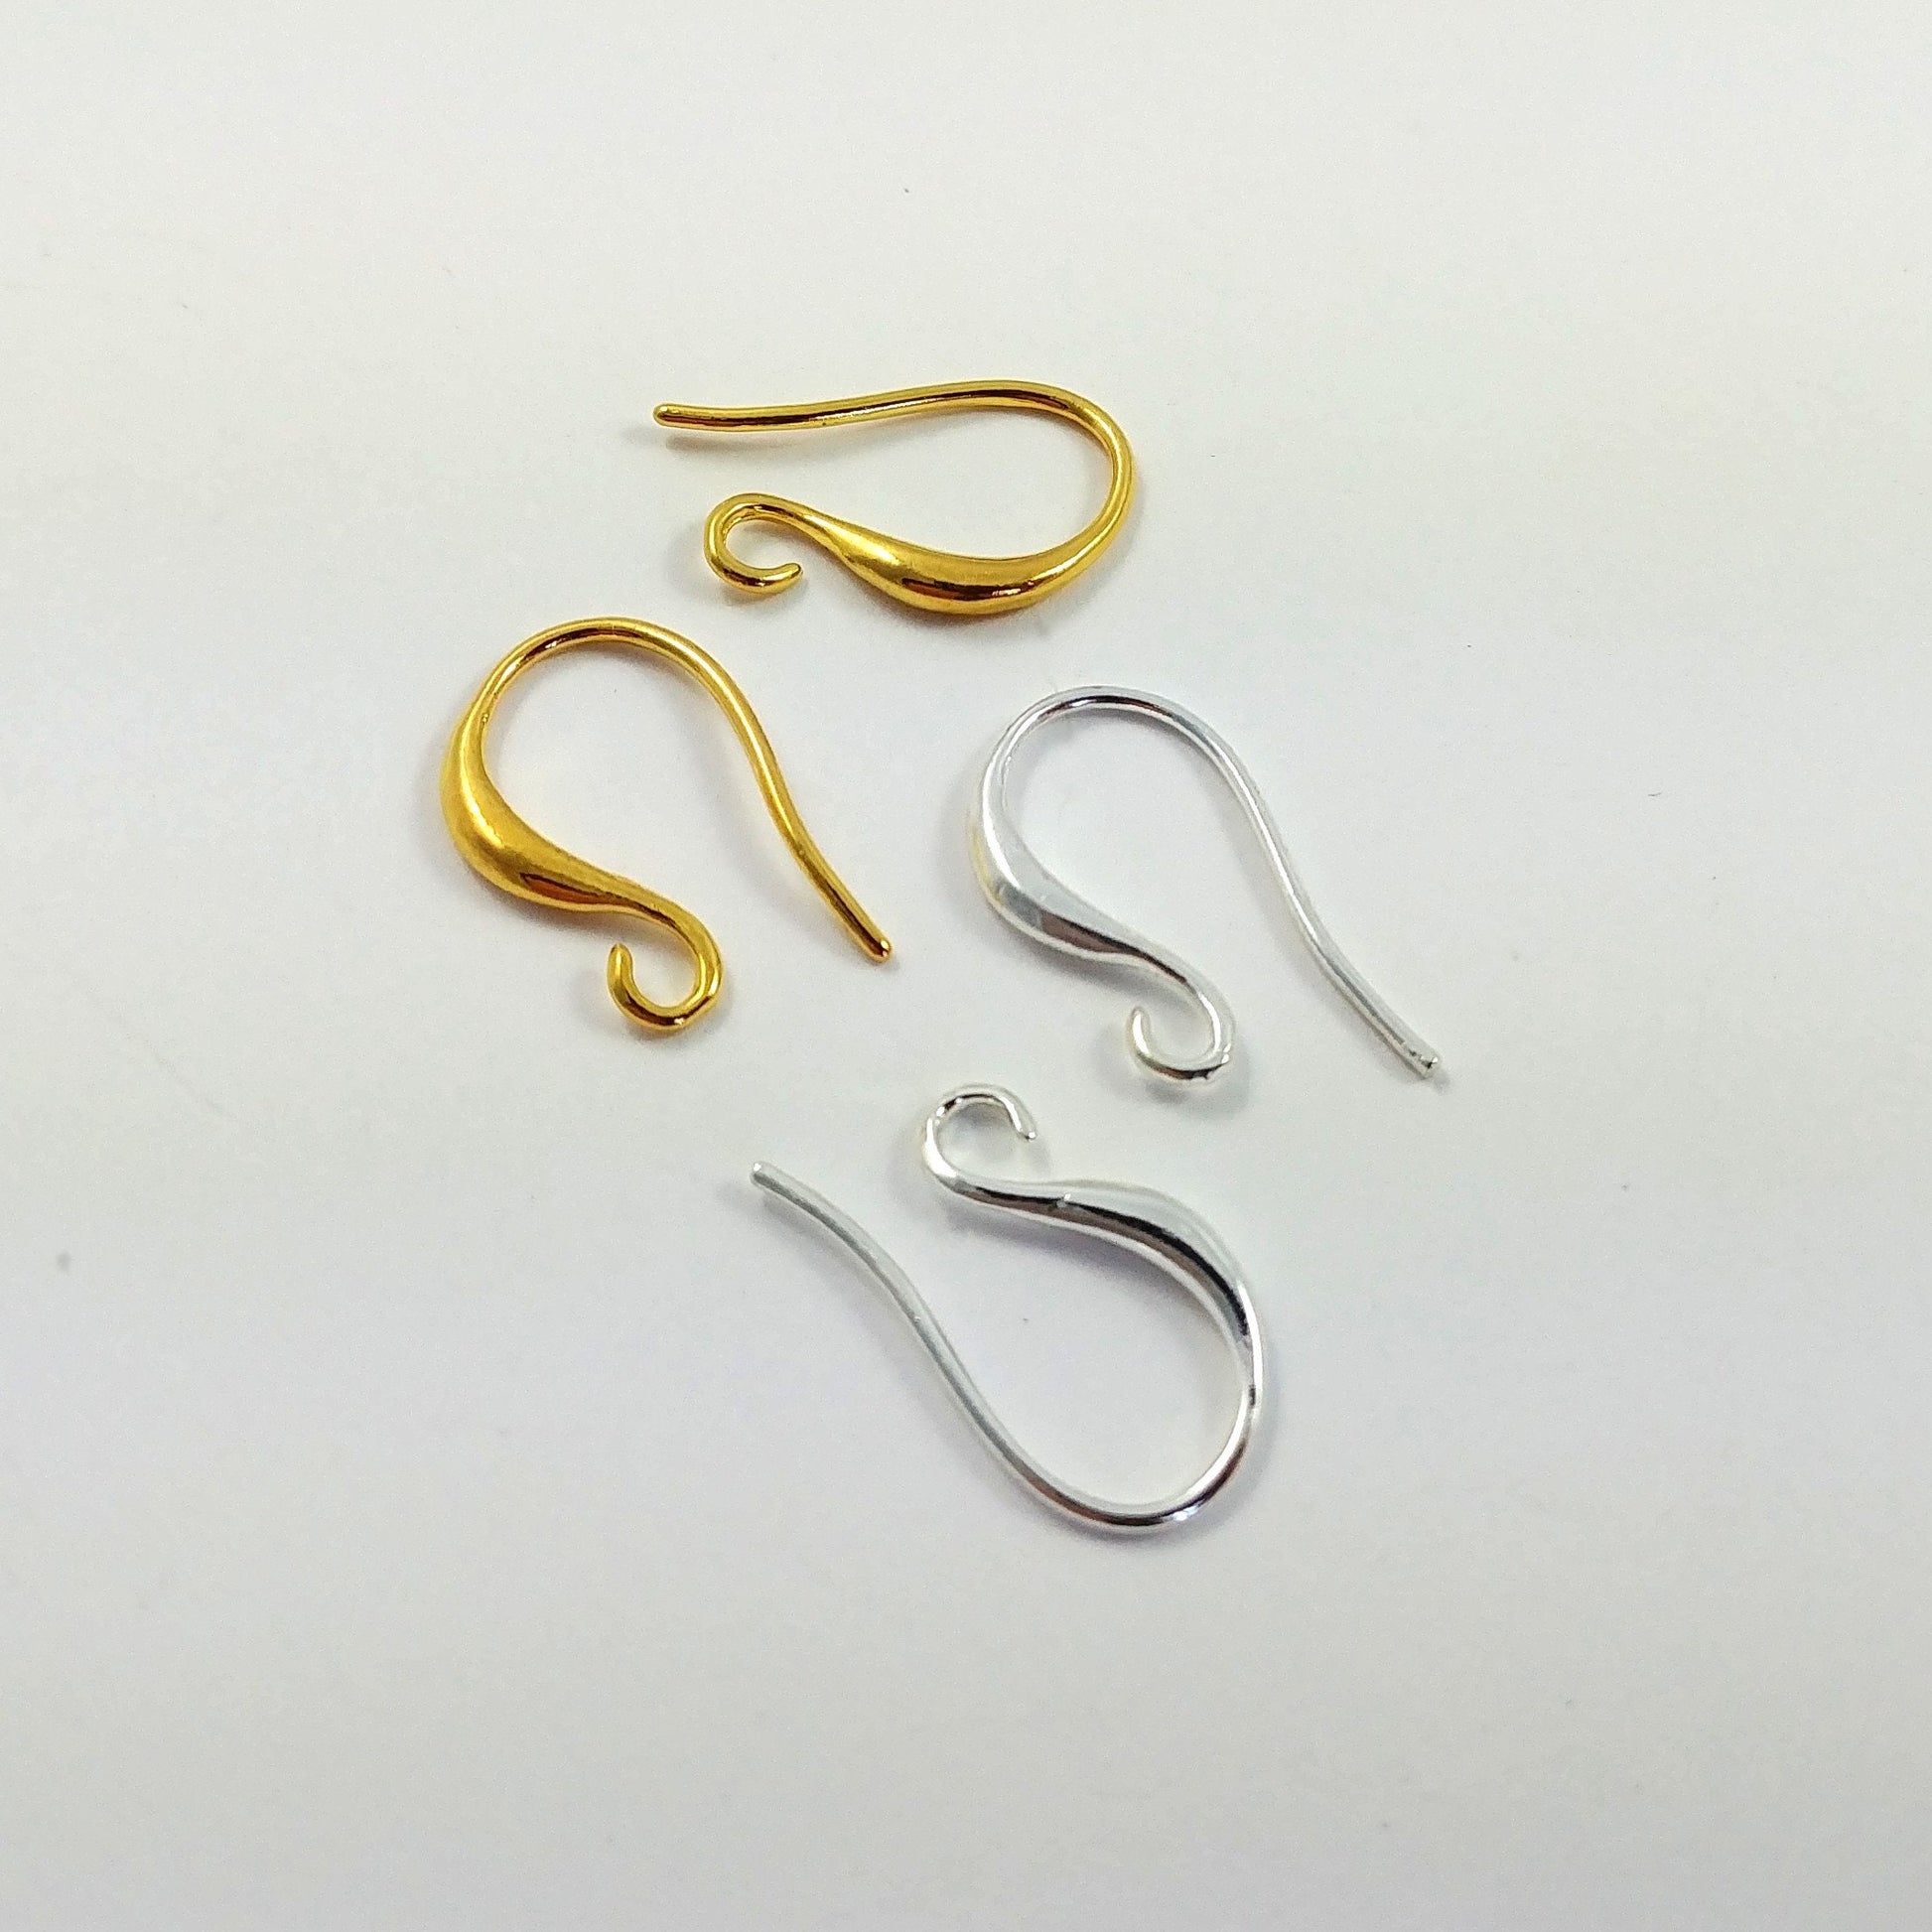 Buy Earring Hooks Silver Plated  Earwire Jewelry Making Findings